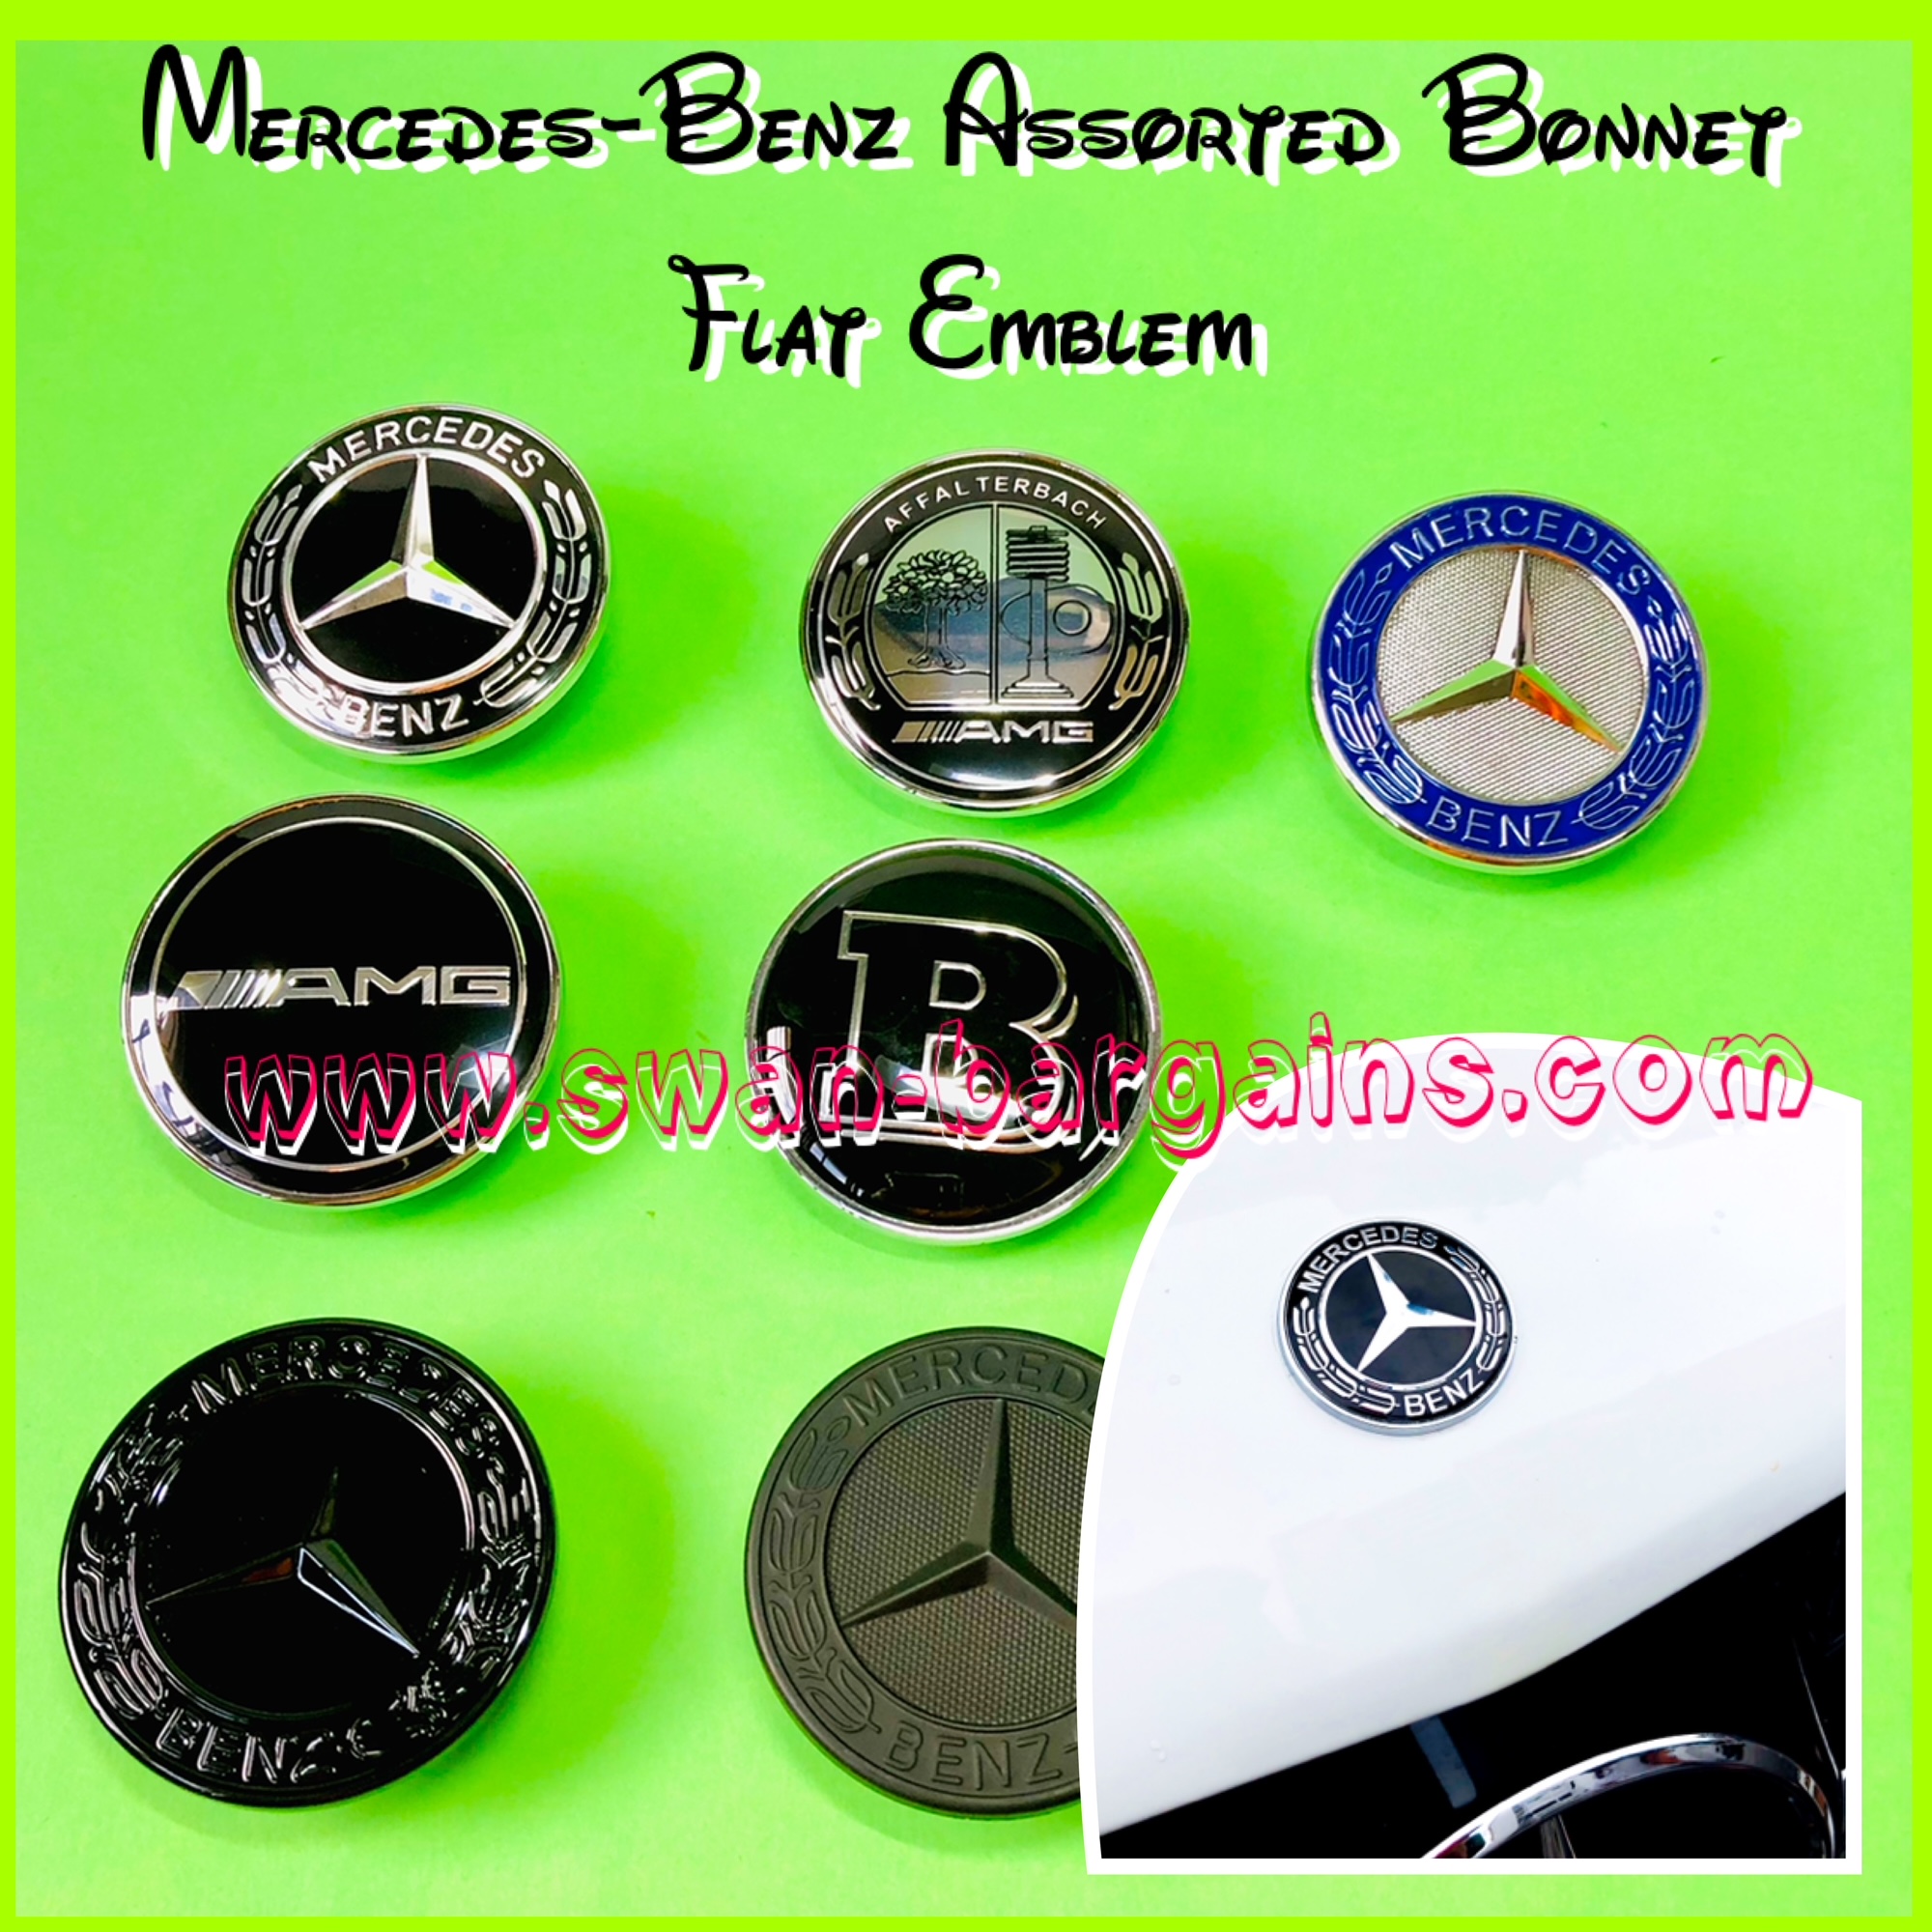 Mercedes-Benz Hood Bonnet Flat Emblem Singapore